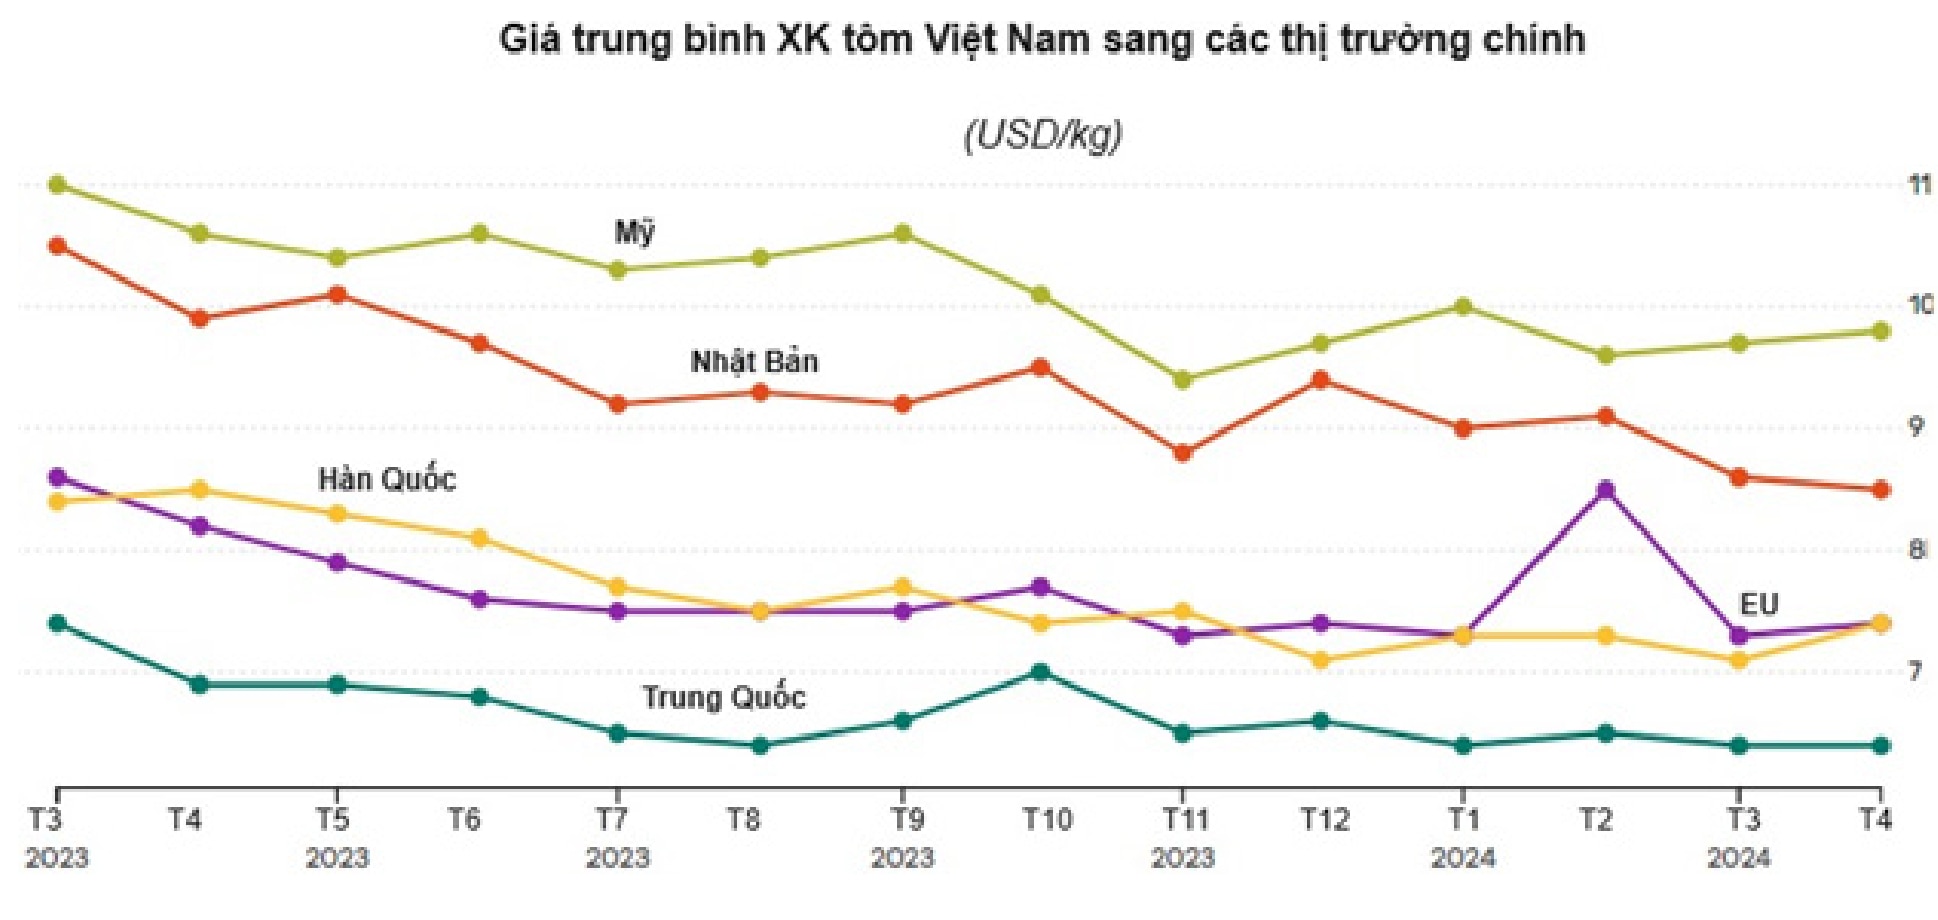 Giá trung bình xuất khẩu tôm của Việt Nam sang các thị trường